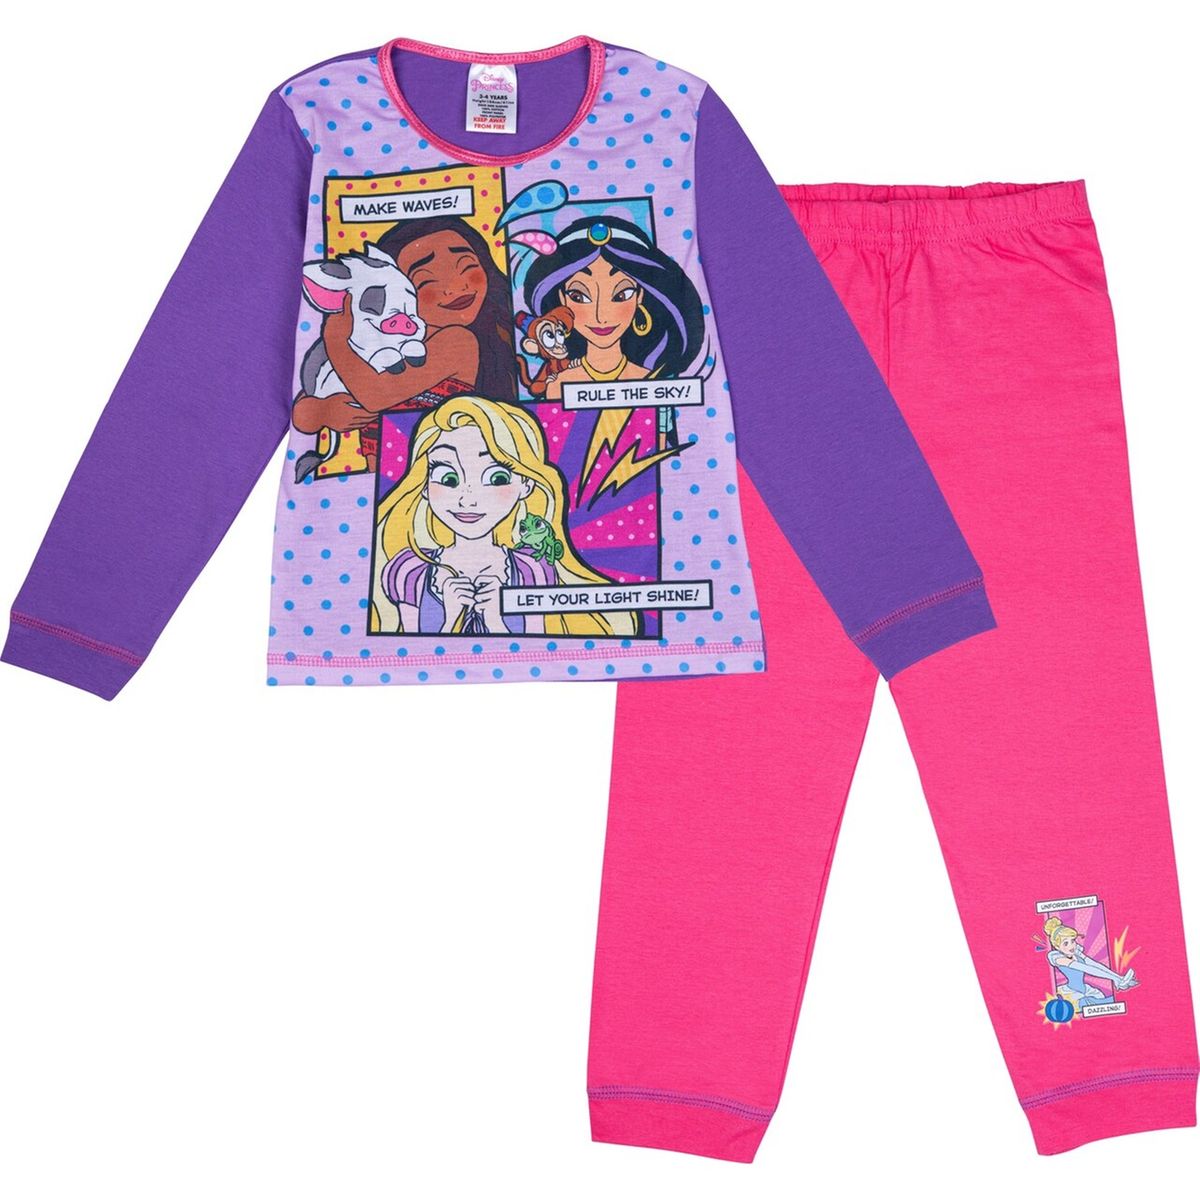 Vêtement Enfant en Coton Jasmine ou Blanche Neige Ariel Raiponce Disney Princesse Pyjama Fille Princesses Cendrillon Idée De Cadeau Filles 2-12 Ans Belle